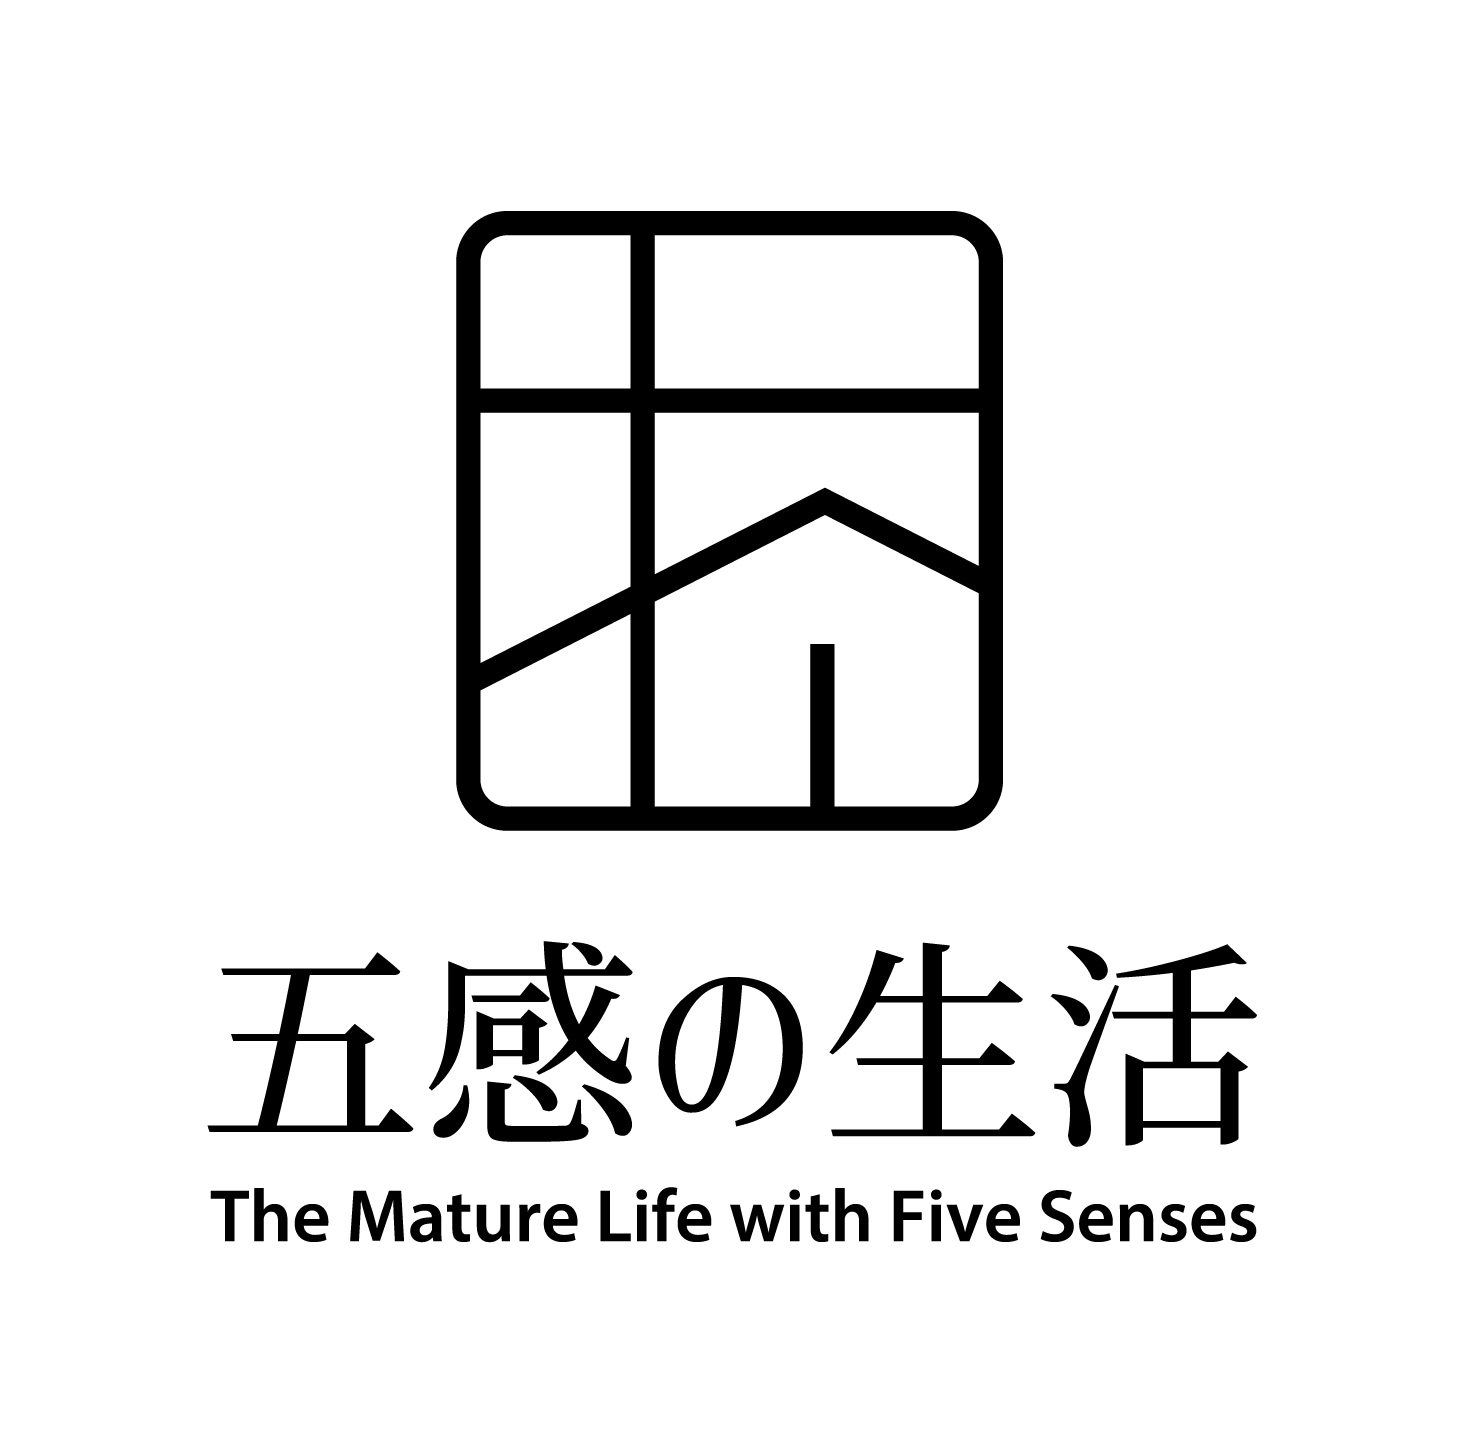 五感の生活 The Mature Life with Five Sences